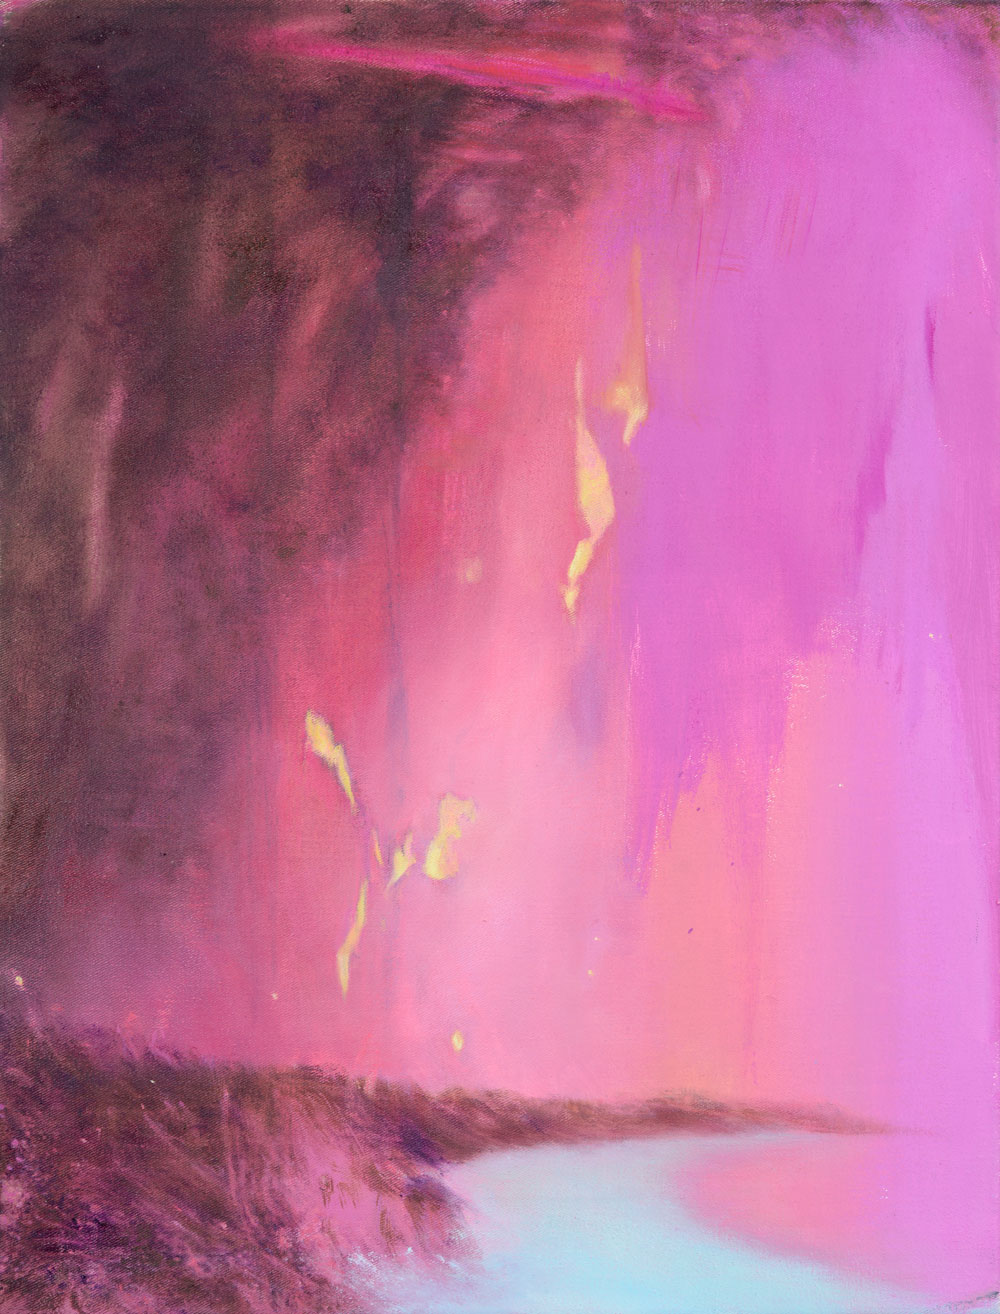 gelbe Kometen fallen durch pinkfarbenen Himmel ins Meer